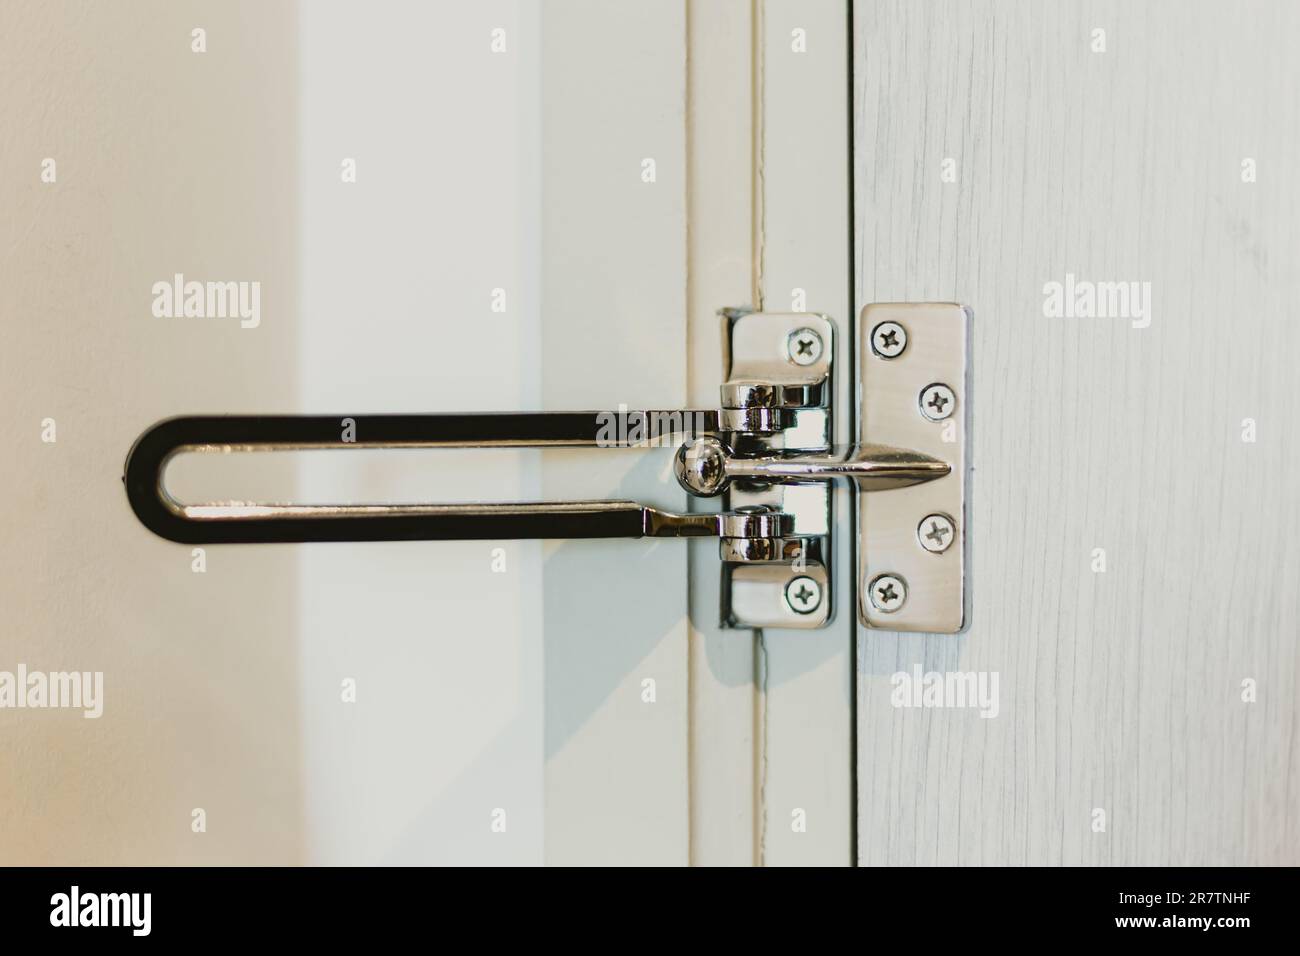 Protection de porte en acier inoxydable verrous de porte barre oscillante chaîne de serrure de porte cadenas anticambriolage fermoir de porte. Banque D'Images